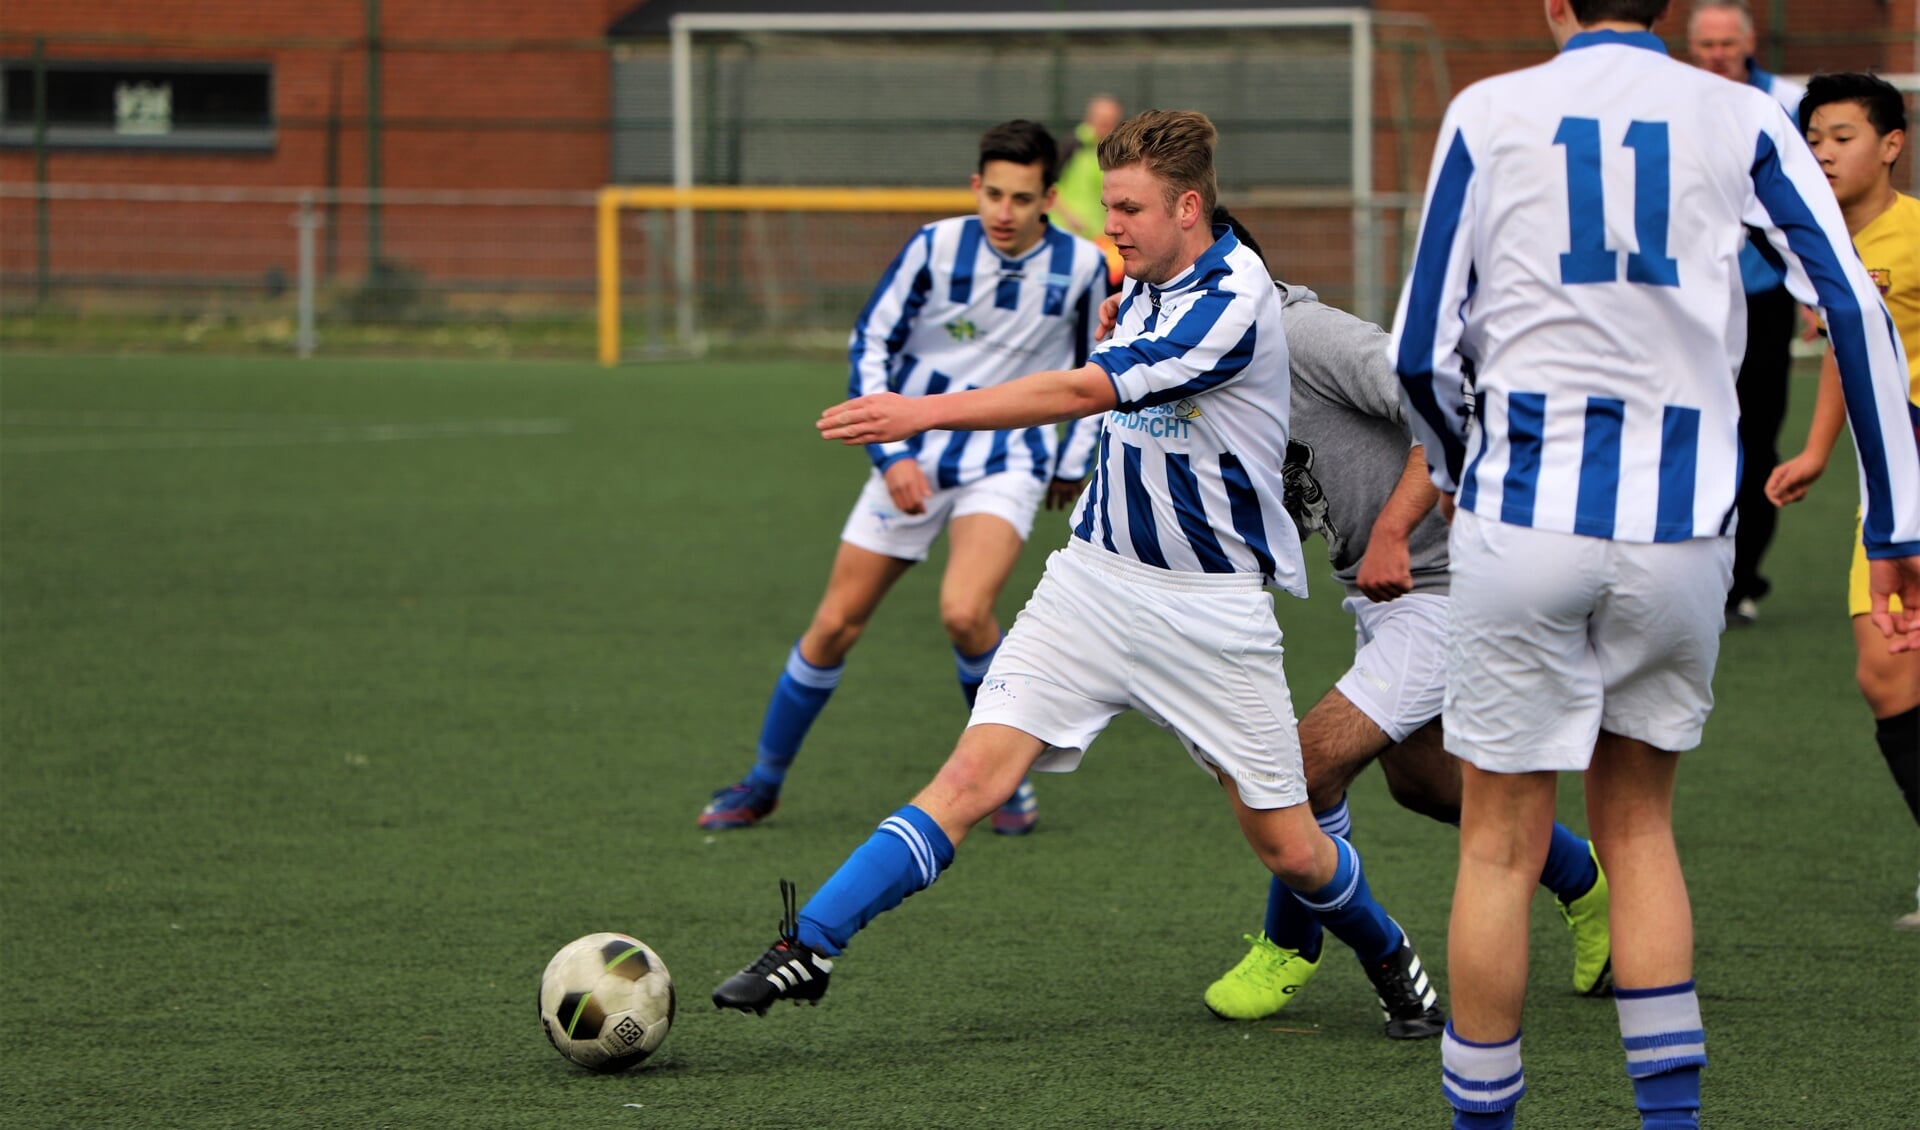 De jeugd onder 17 en 19 speelde een onderlinge wedstrijd op sportpark ’t Lage.